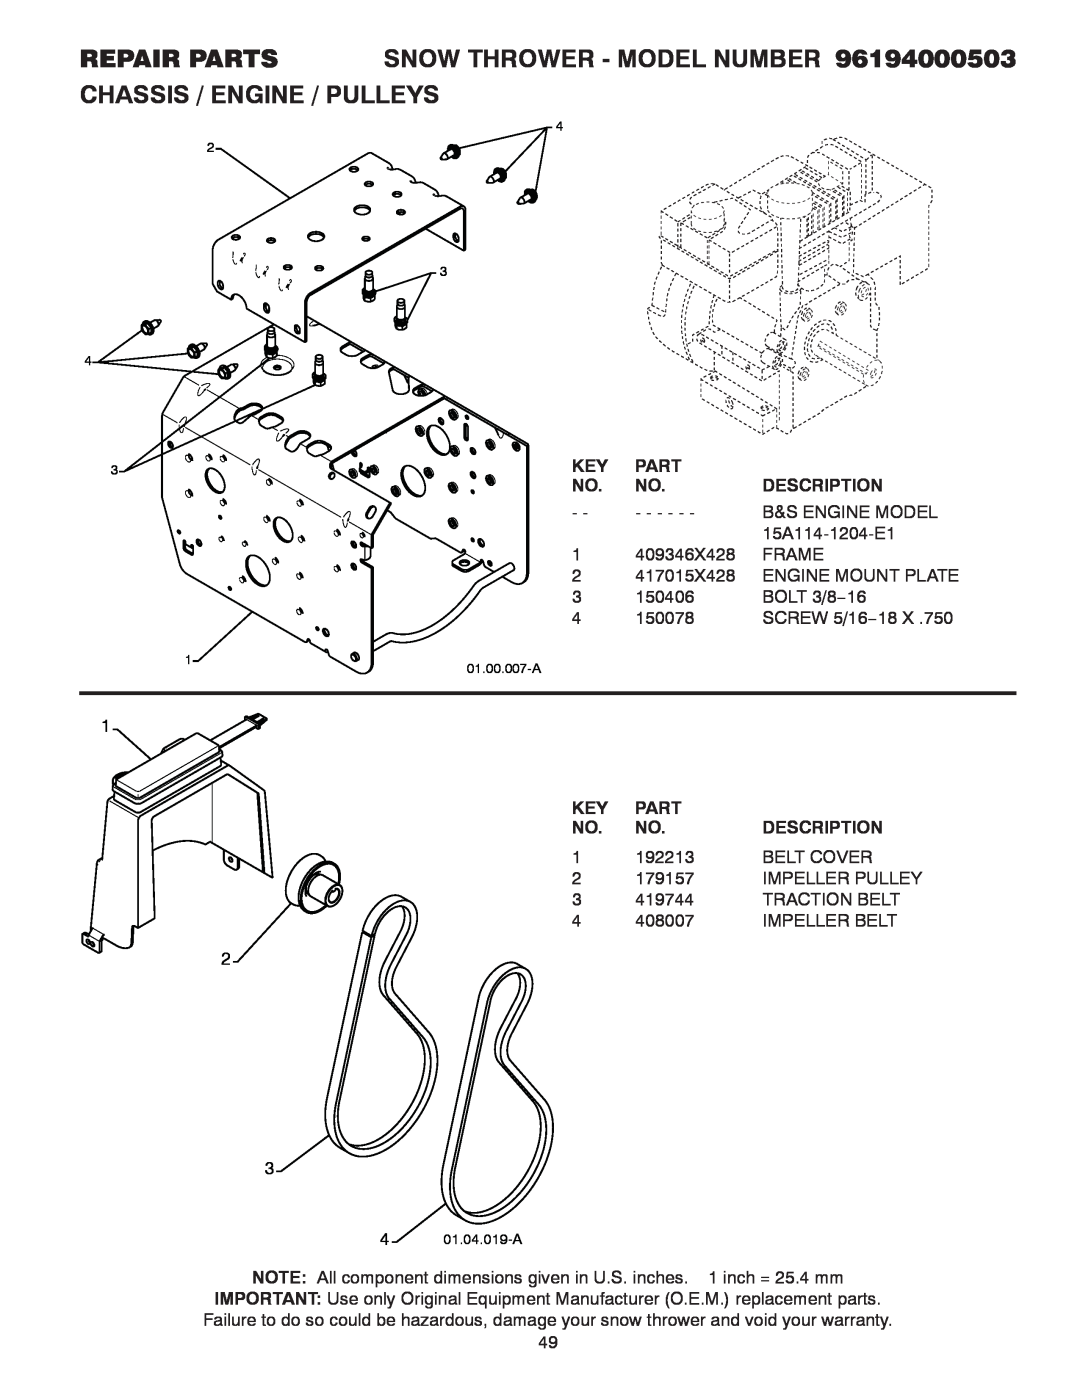 Poulan 96194000503 owner manual Part, Description, B&S Engine Model 